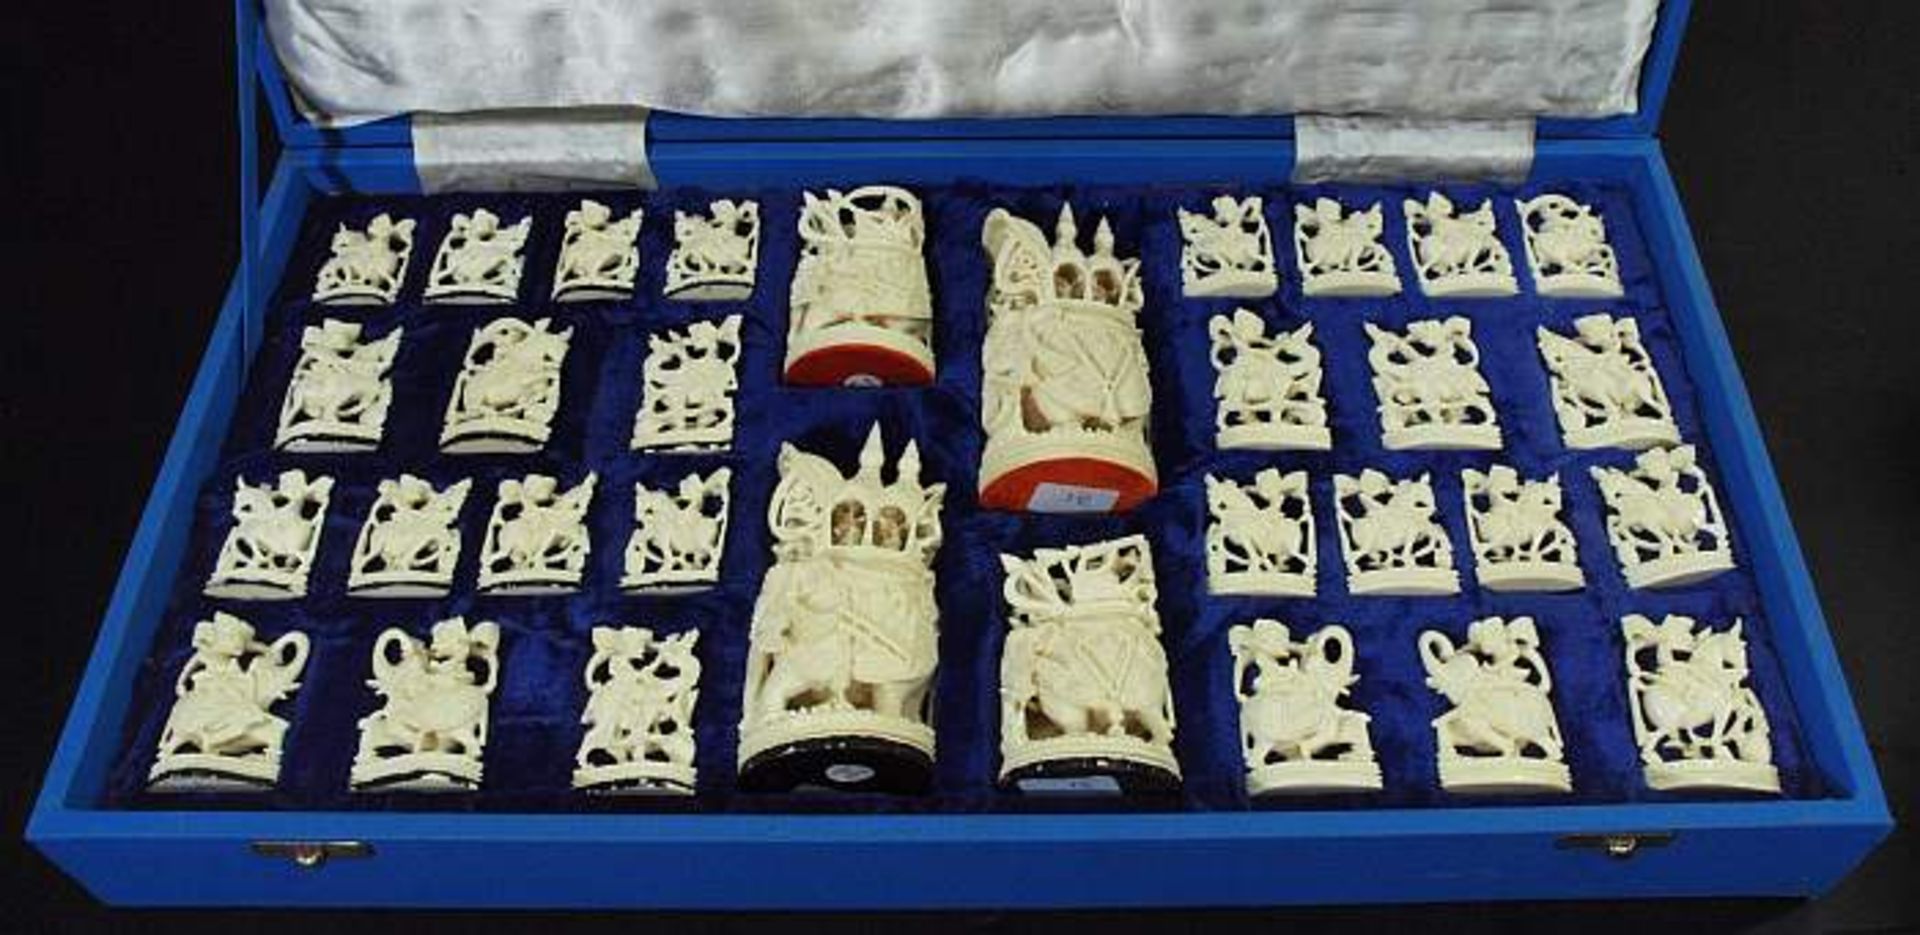 Elfenbein-Schachspiel "Alt-Indien" um ca. 1975, komplett im Koffer. Elfenbein-Schachspiel "Alt-